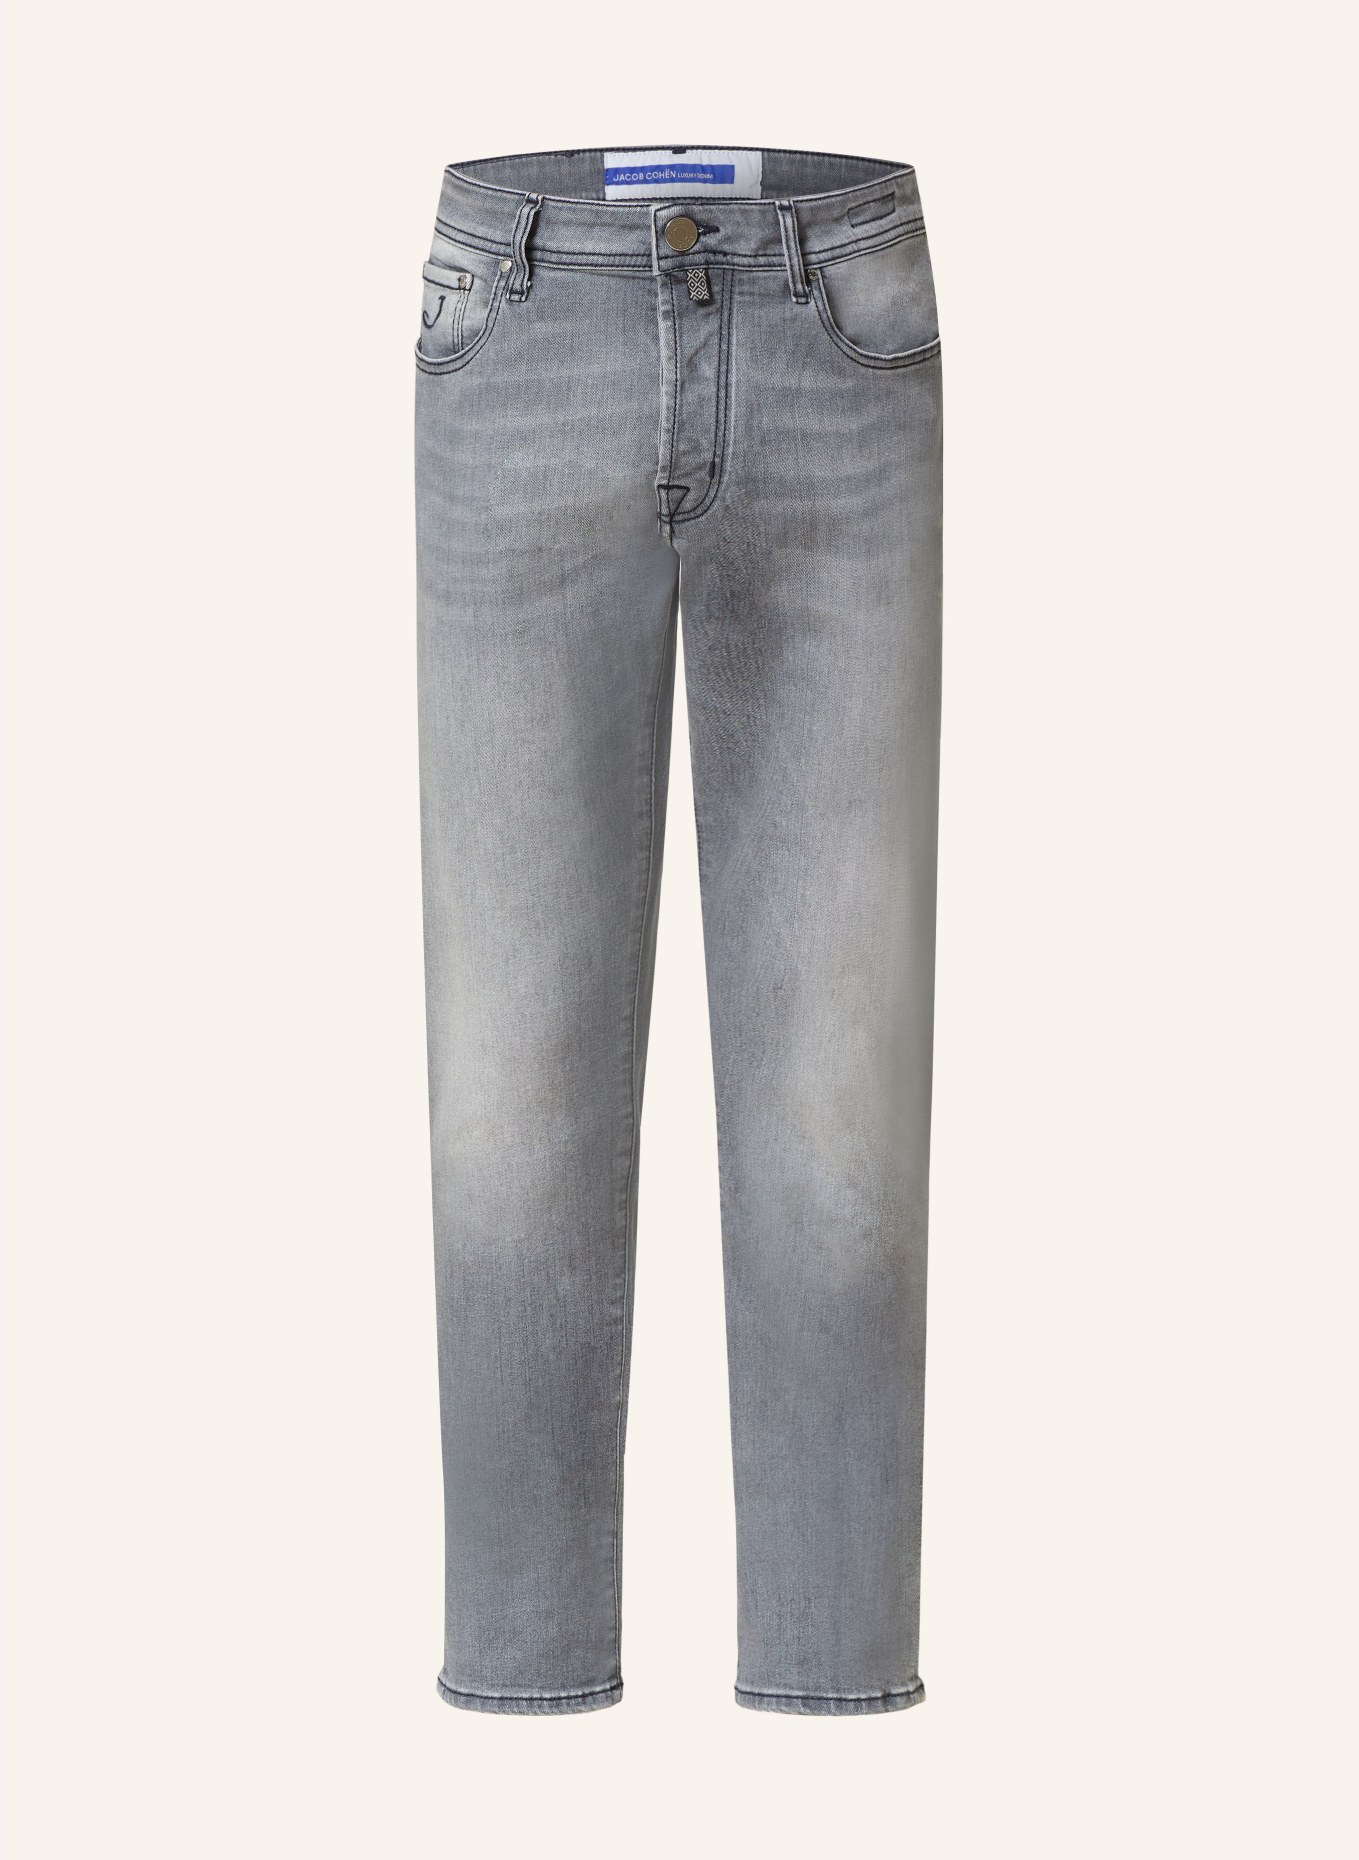 JACOB COHEN Jeans BARD slim fit, Color: 746D Light Grey (Image 1)